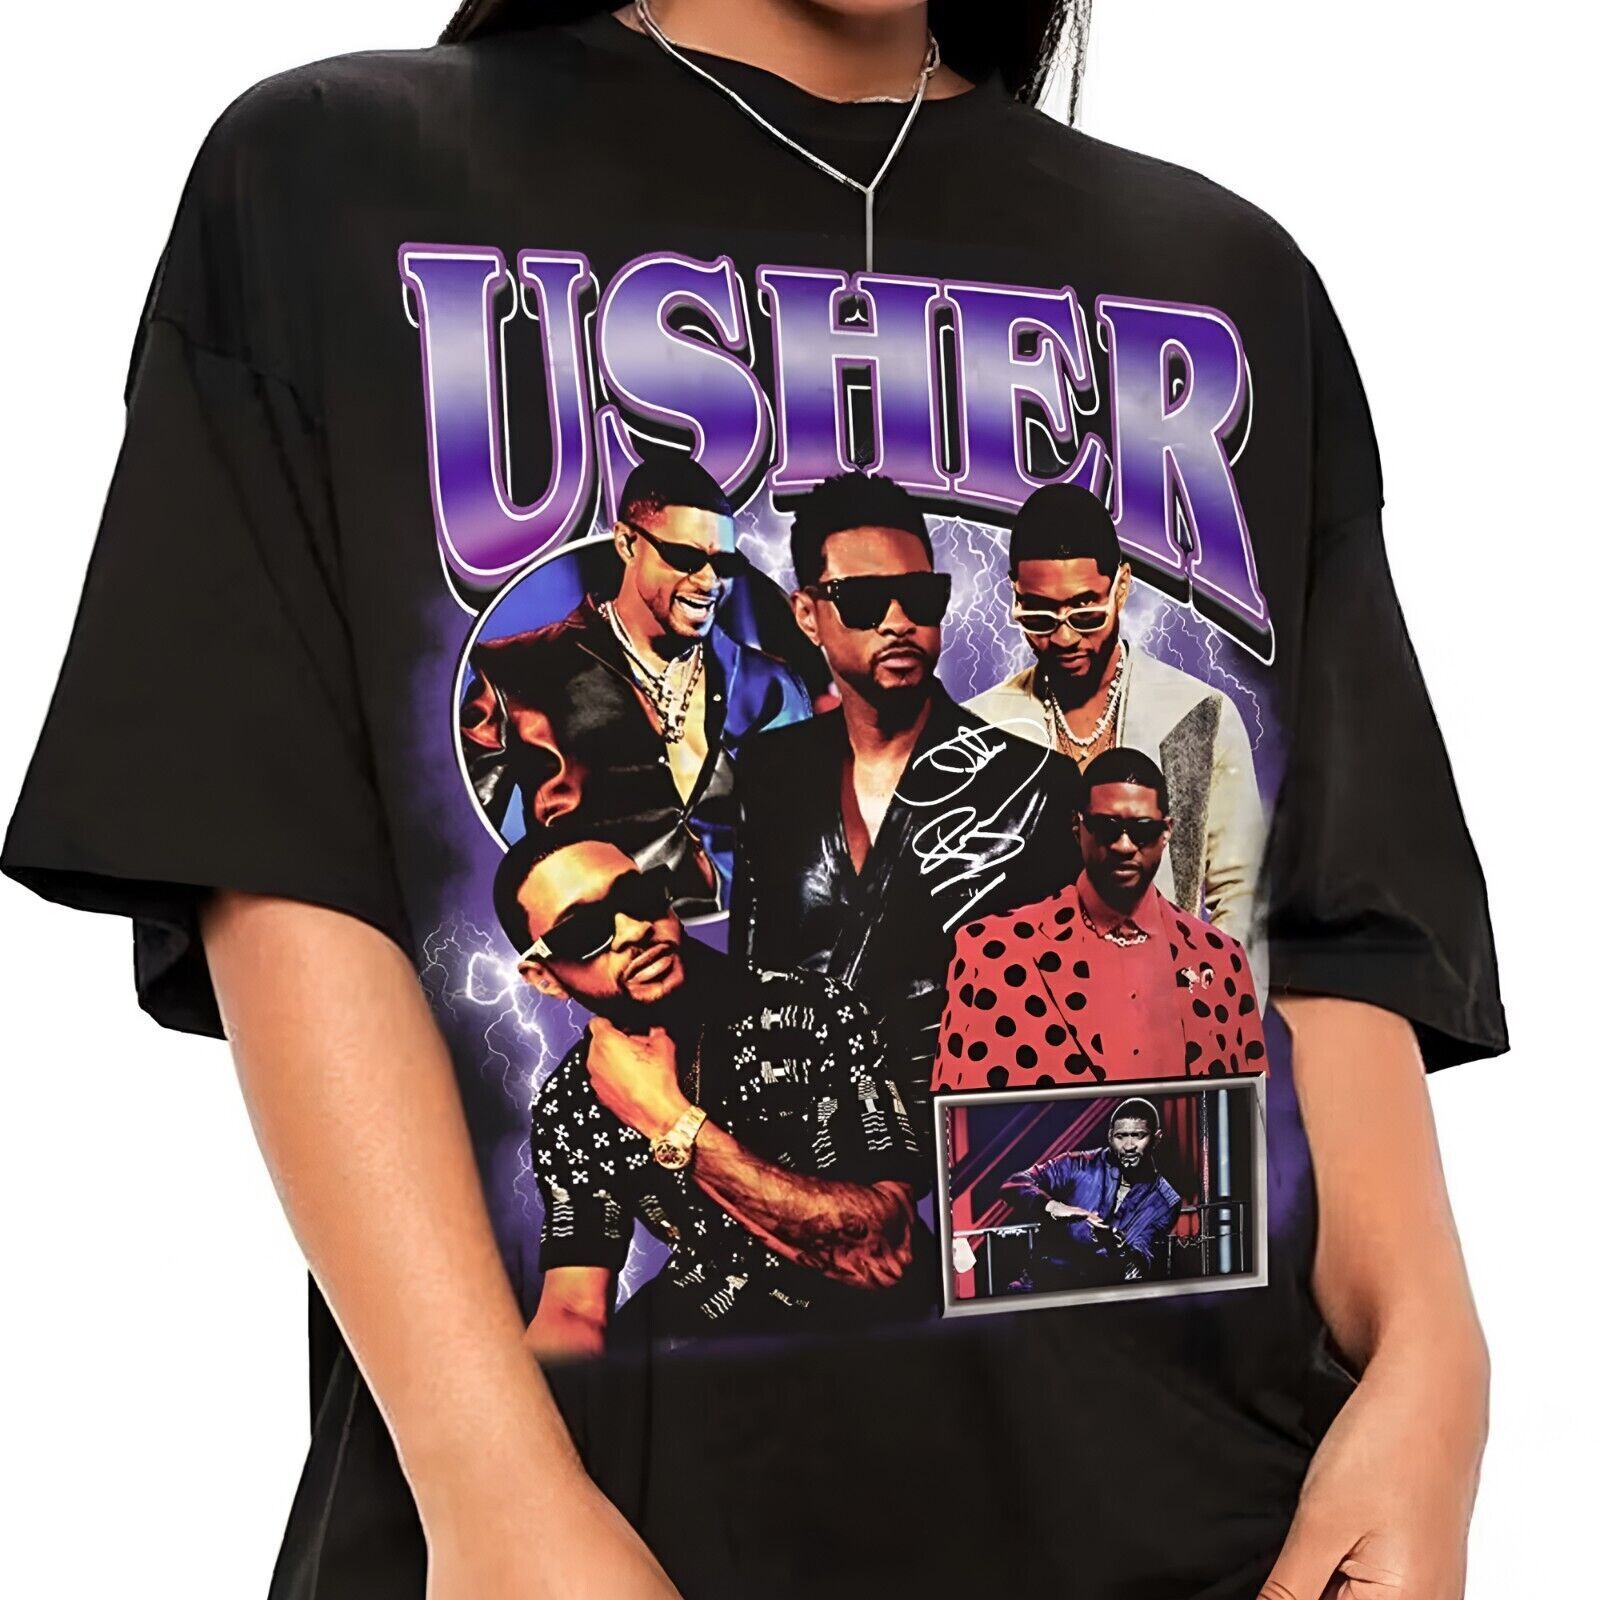 Hot Usher Singer T-shirt